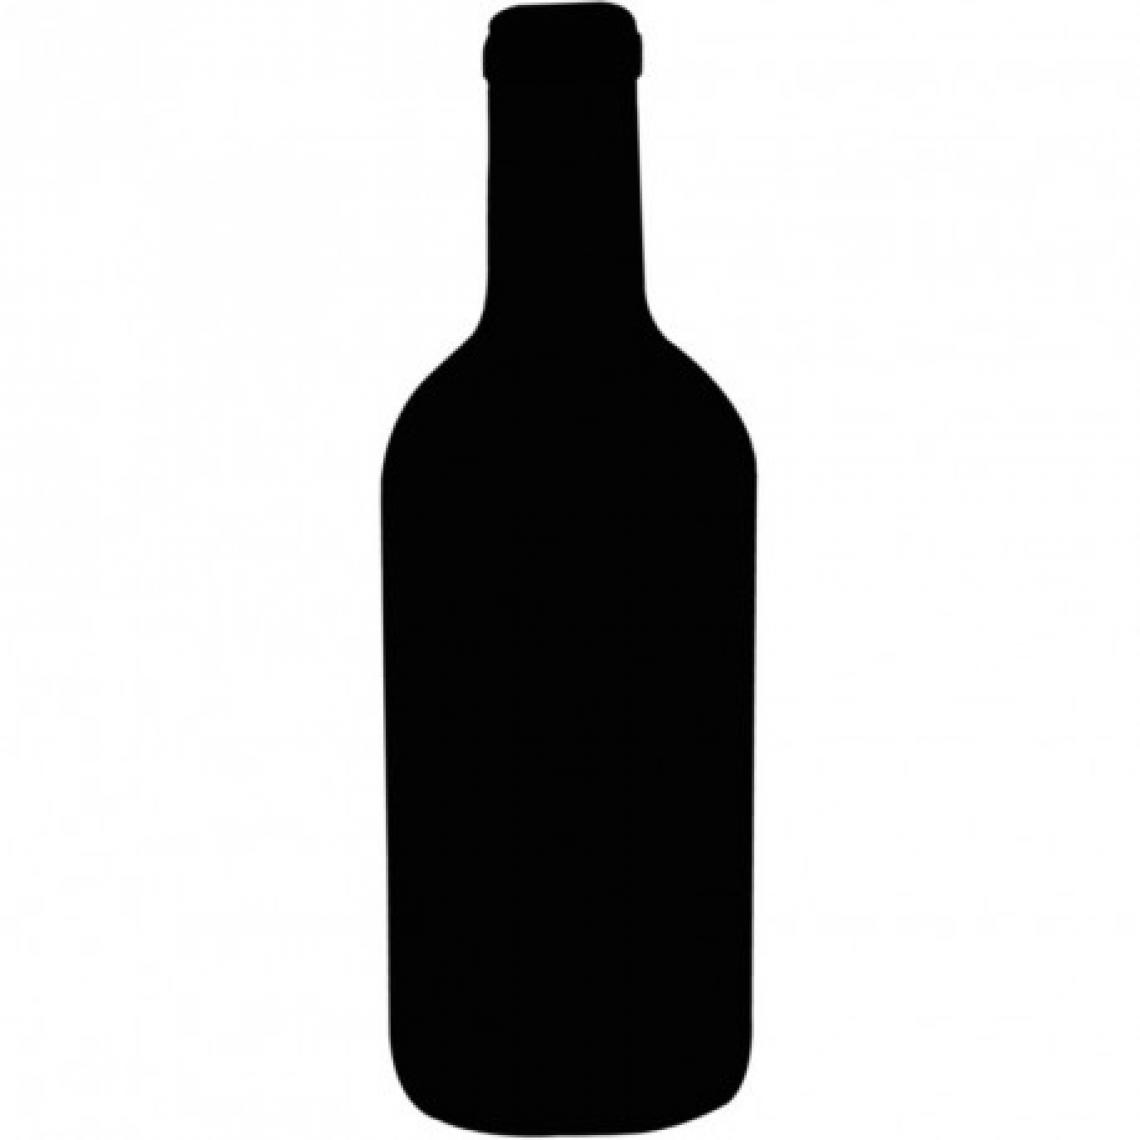 Materiel Chr Pro - Ardoise bouteille de vin Securit - 500 x 150 mm - Ardoises et tableaux